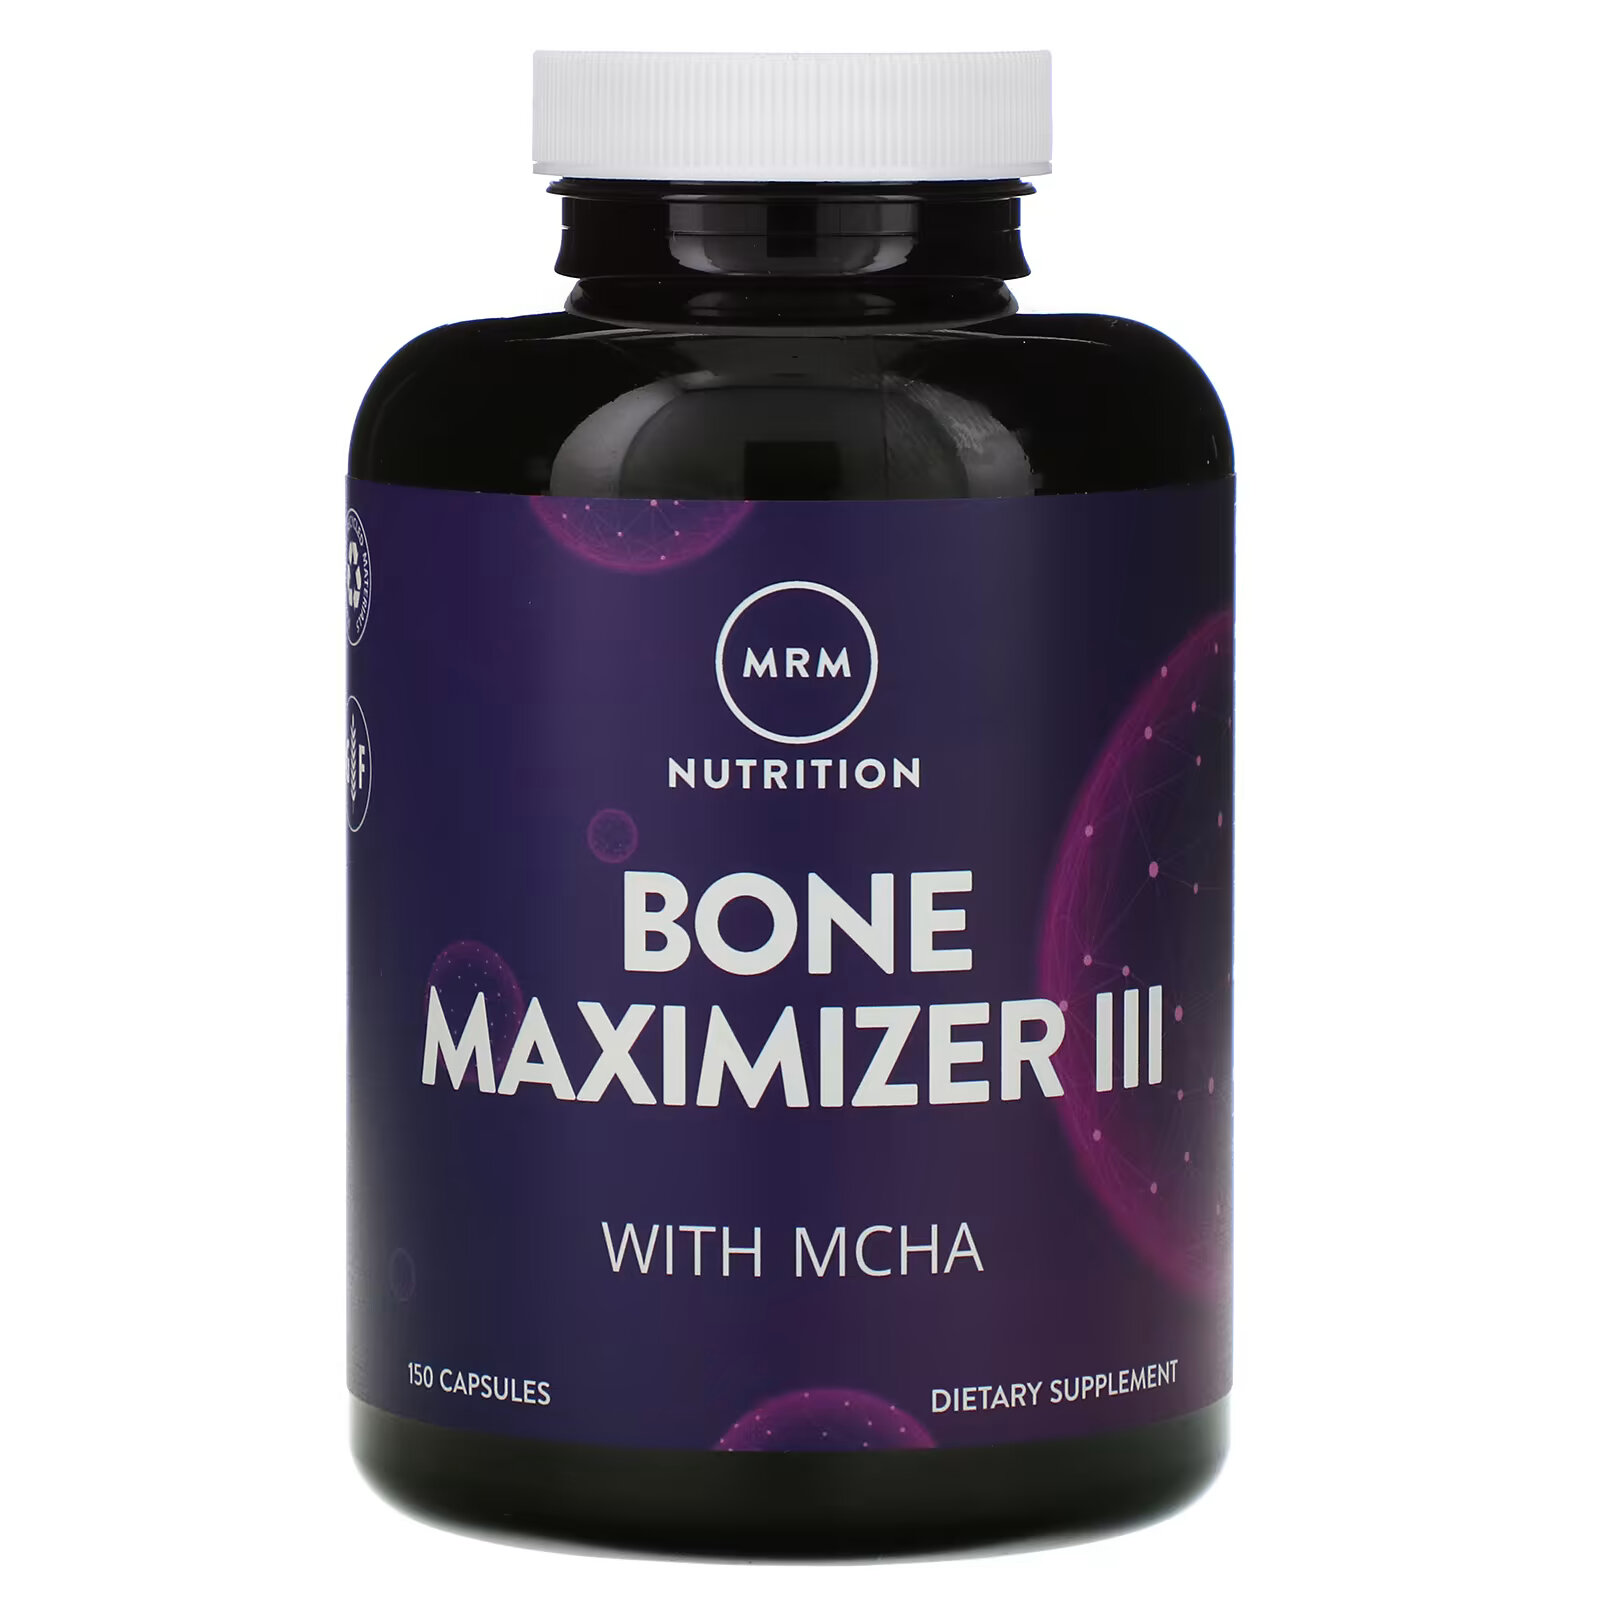 цена MRM Nutrition, Nutrition, Bone Maximizer III с МКГА, 150 капсул